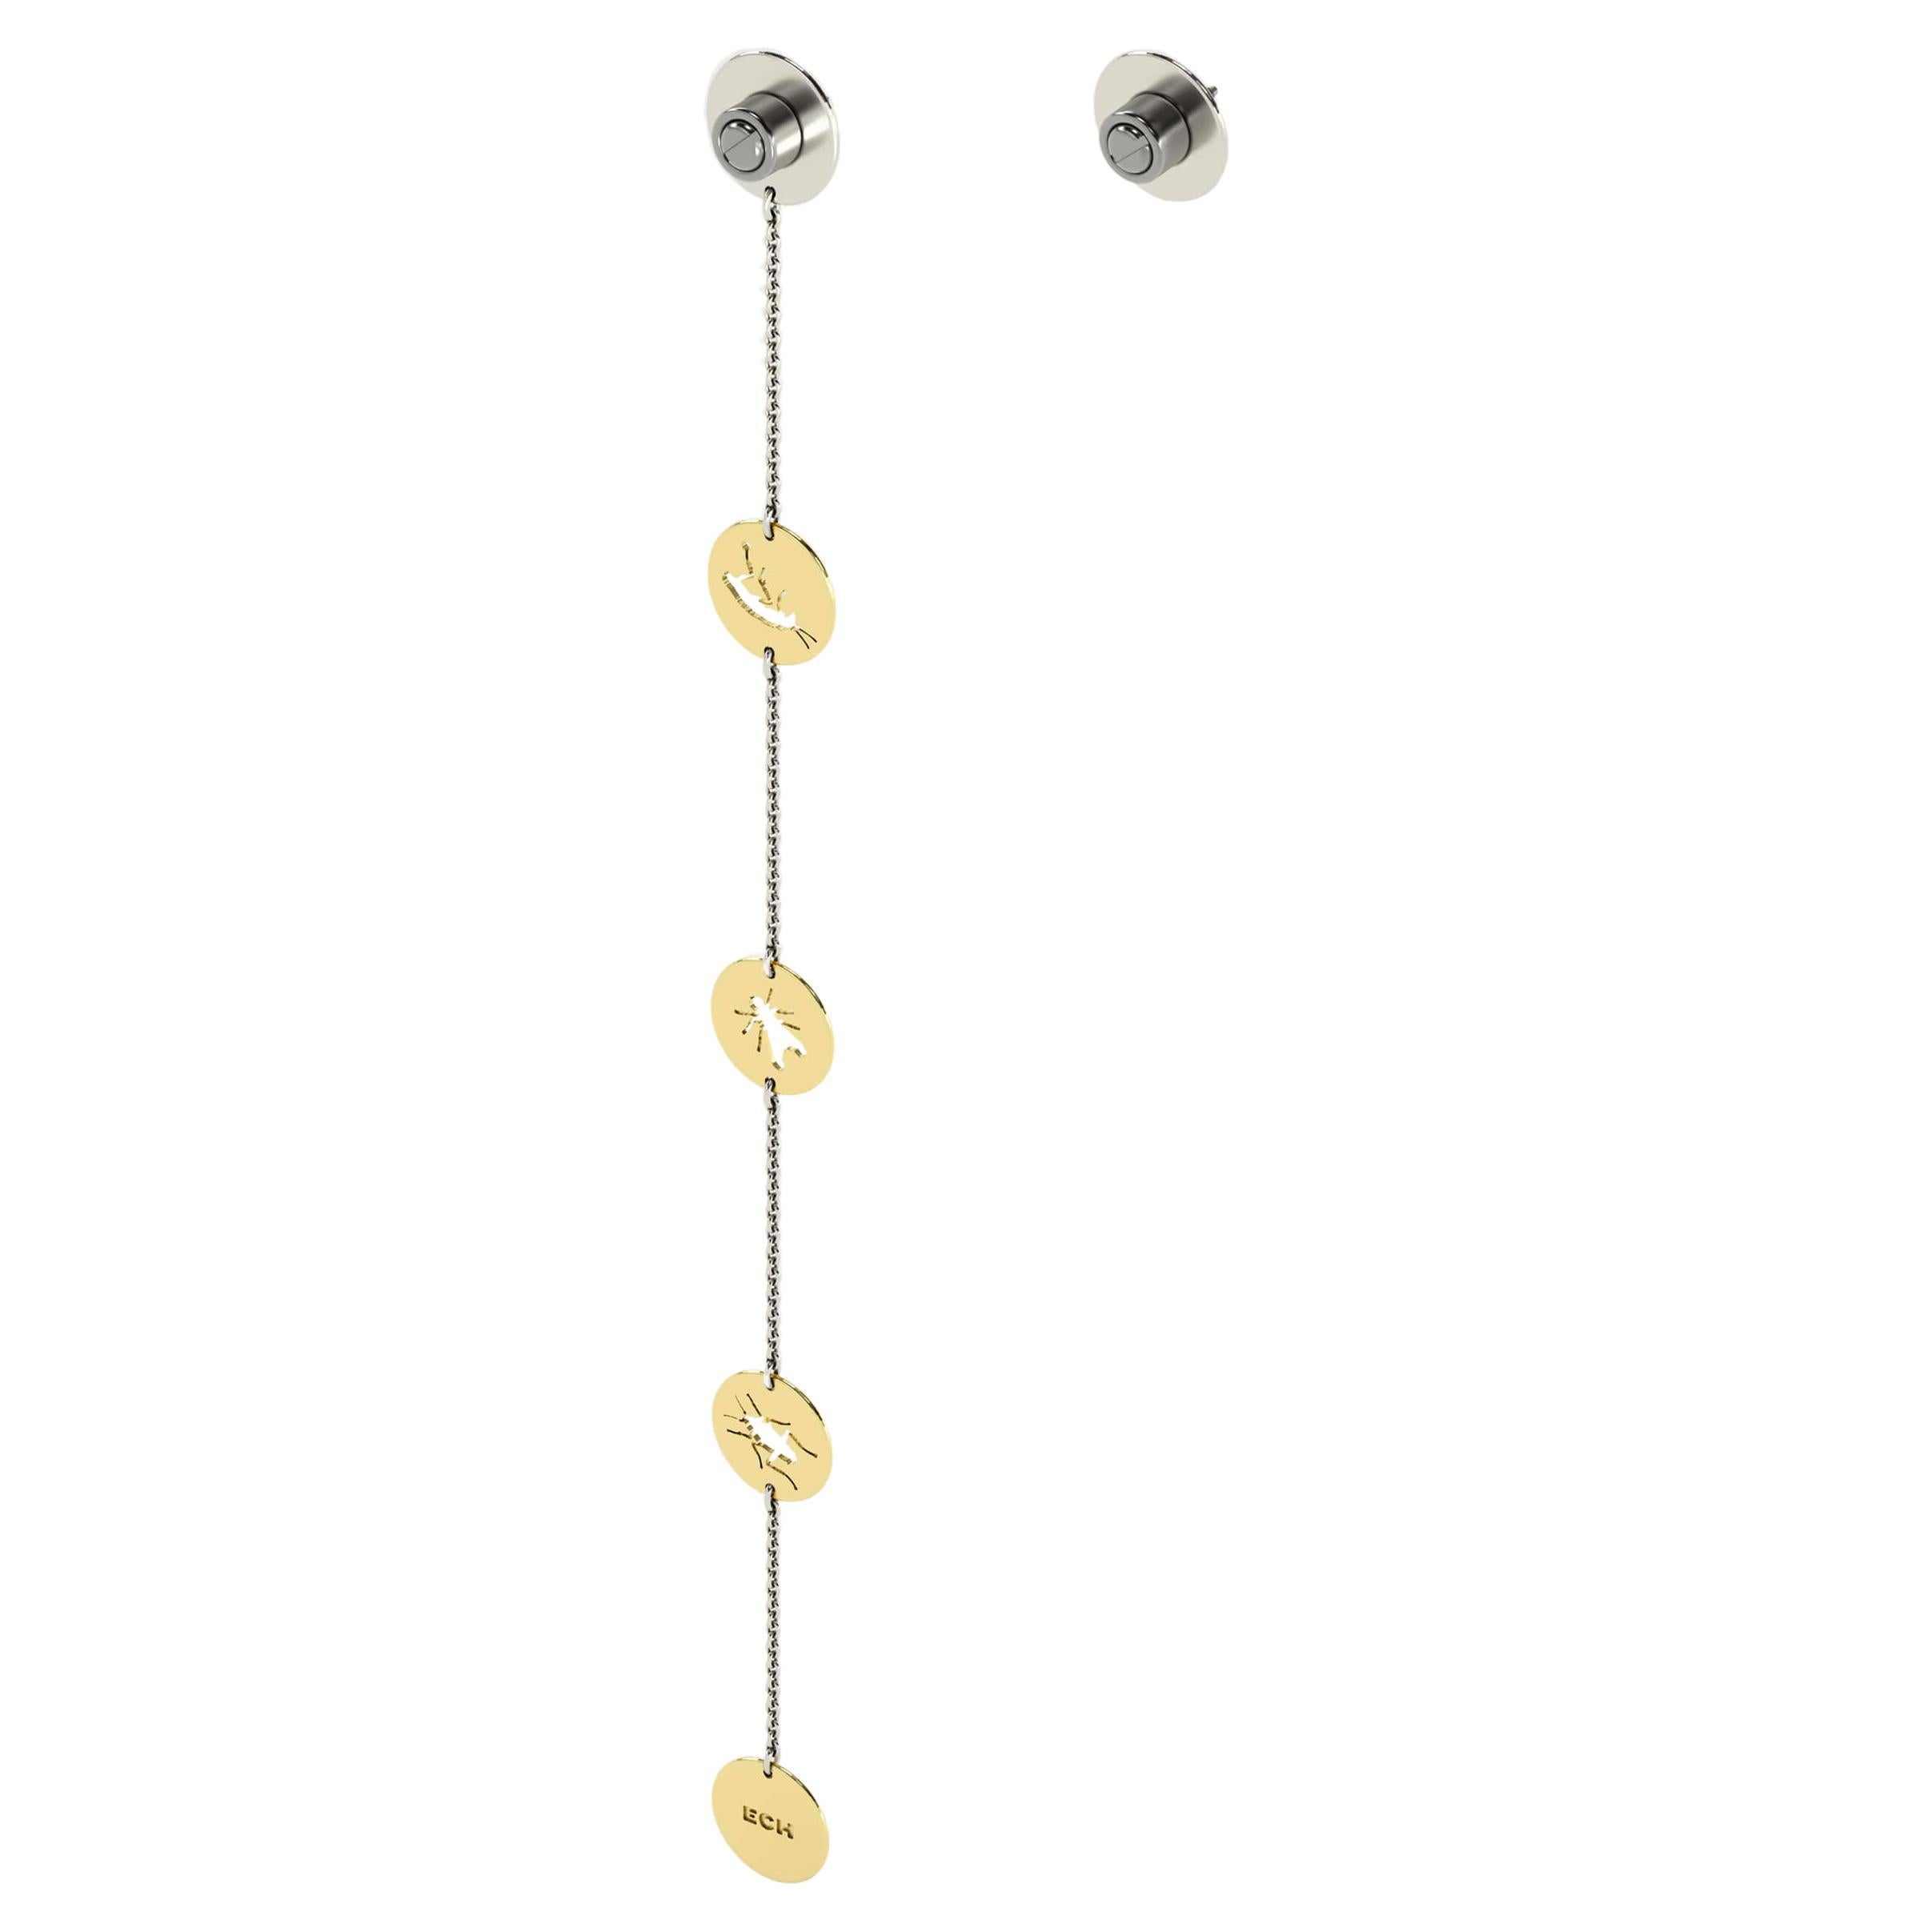 Asymmetric Pair of Gold Chain Earring, 18k & Steel Stud Earring